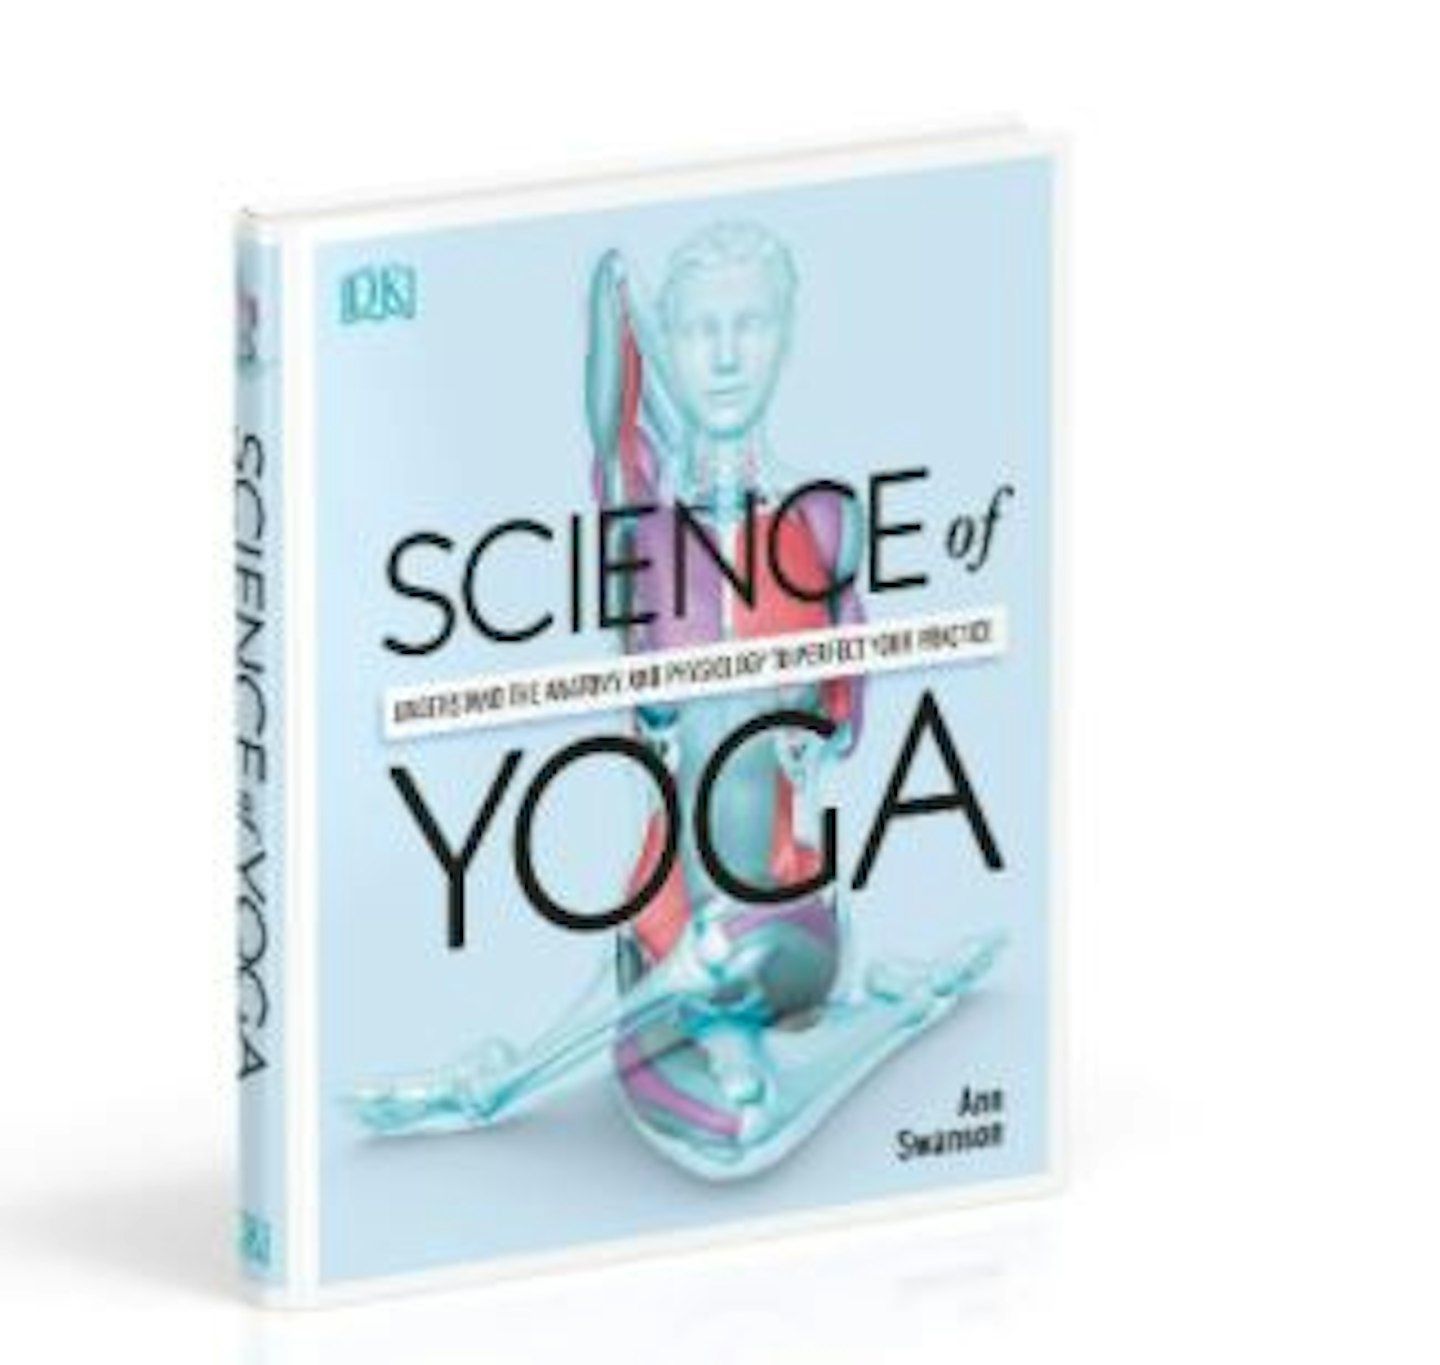 Science of Yoga u2013 Ann Swanson